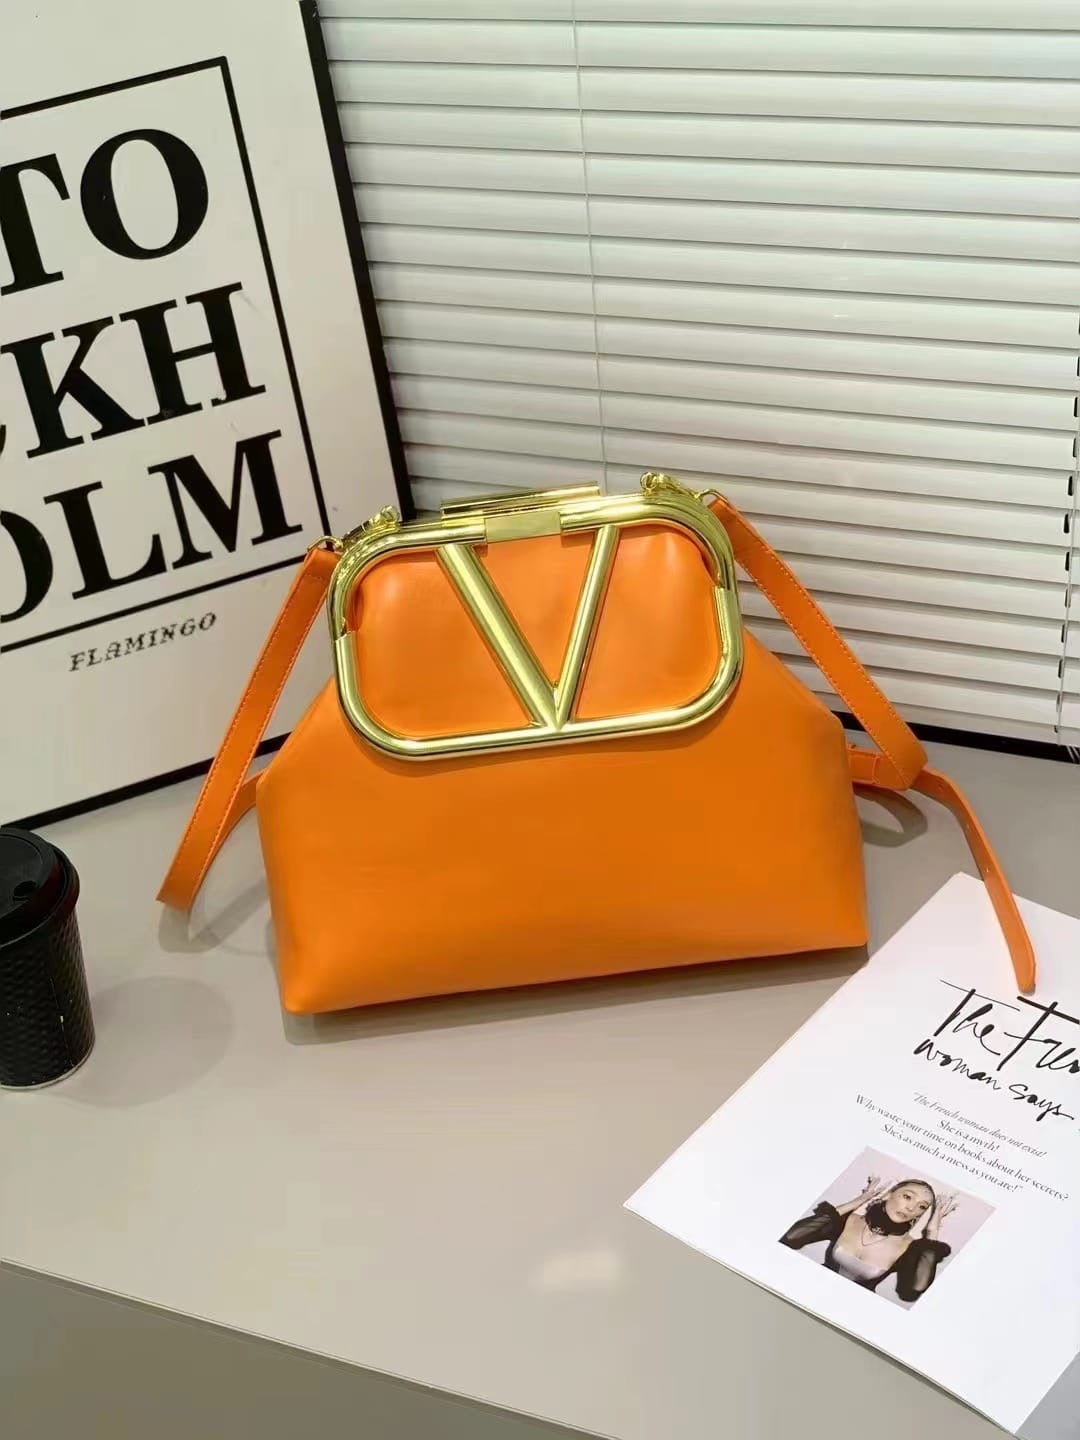 Valentino VLT Handbags